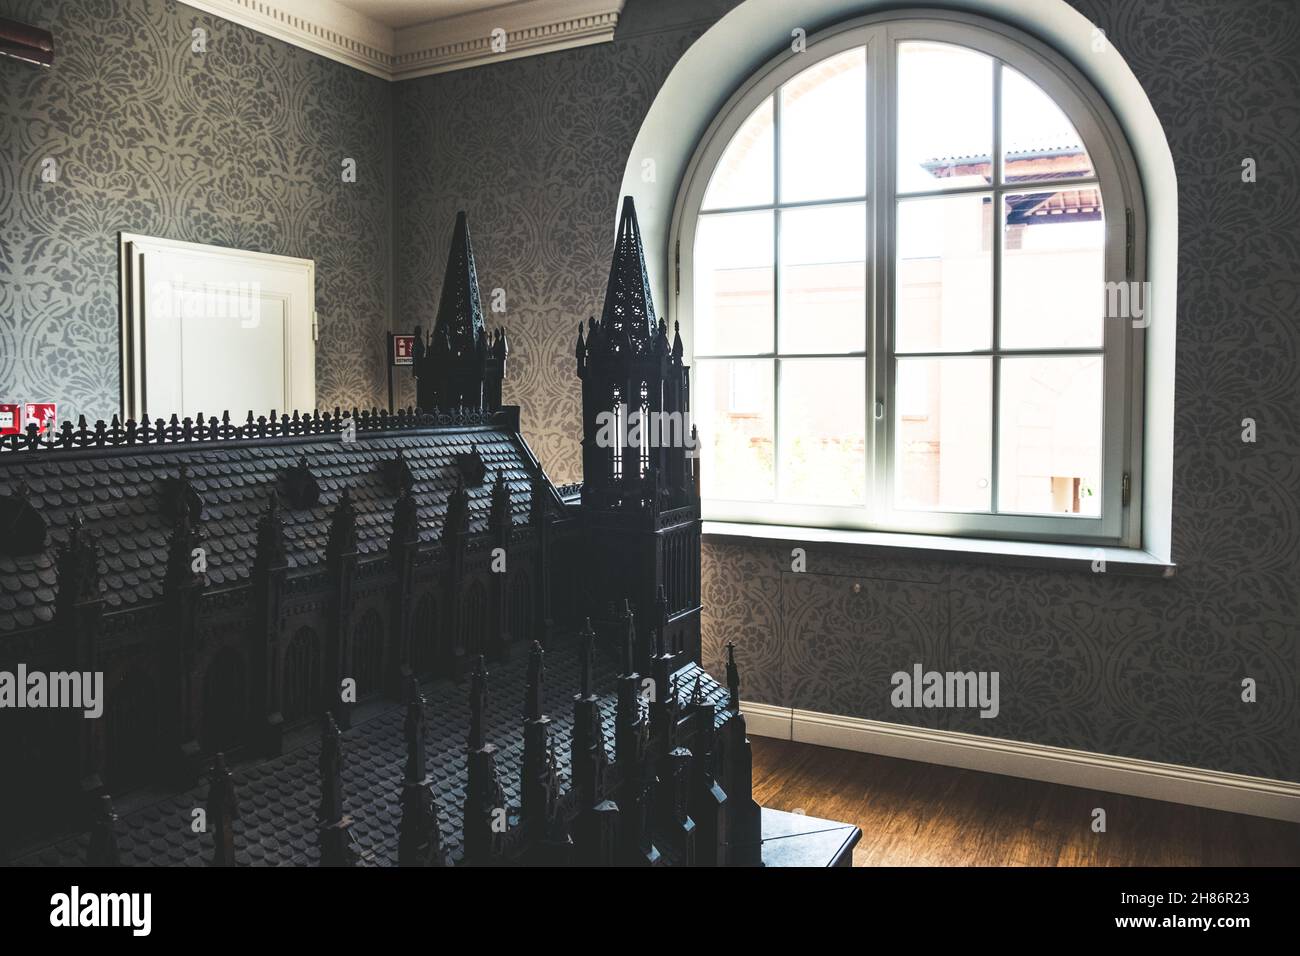 Modello architettonico della chiesa gotica in plastica nera all'interno del museo Labirinto della Masone a Fontanellato - Italia Foto Stock